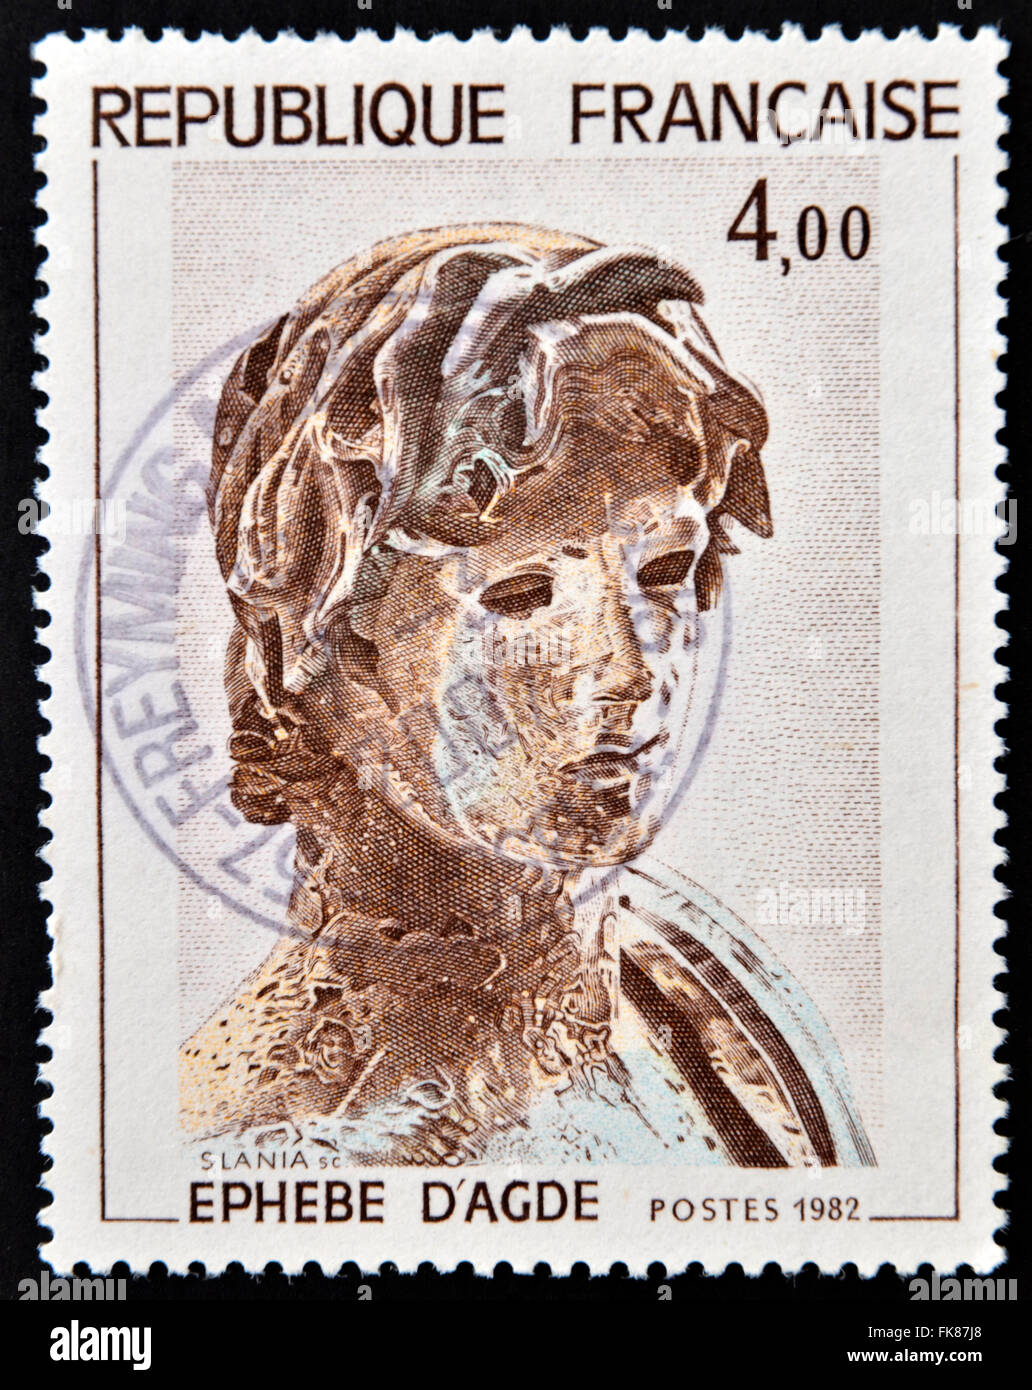 Frankreich - ca. 1982: eine Briefmarke gedruckt in Frankreich zeigt junge griechische Soldaten, griechische Skulptur Agude, ca. 1982 Stockfoto